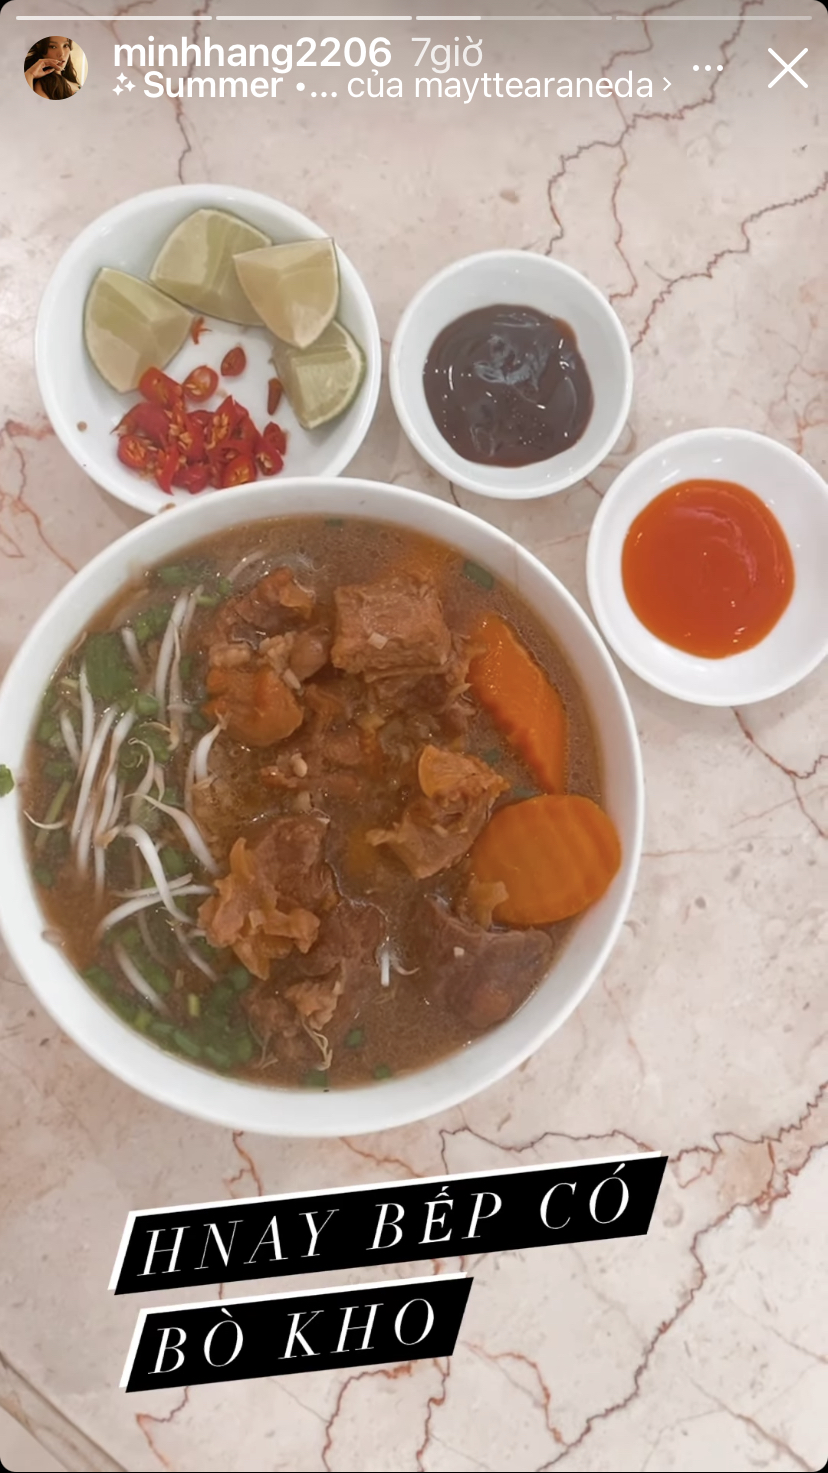 Bò kho là món ăn xuất hiện trong gian bếp tại gia của Minh Hằng hôm nay.